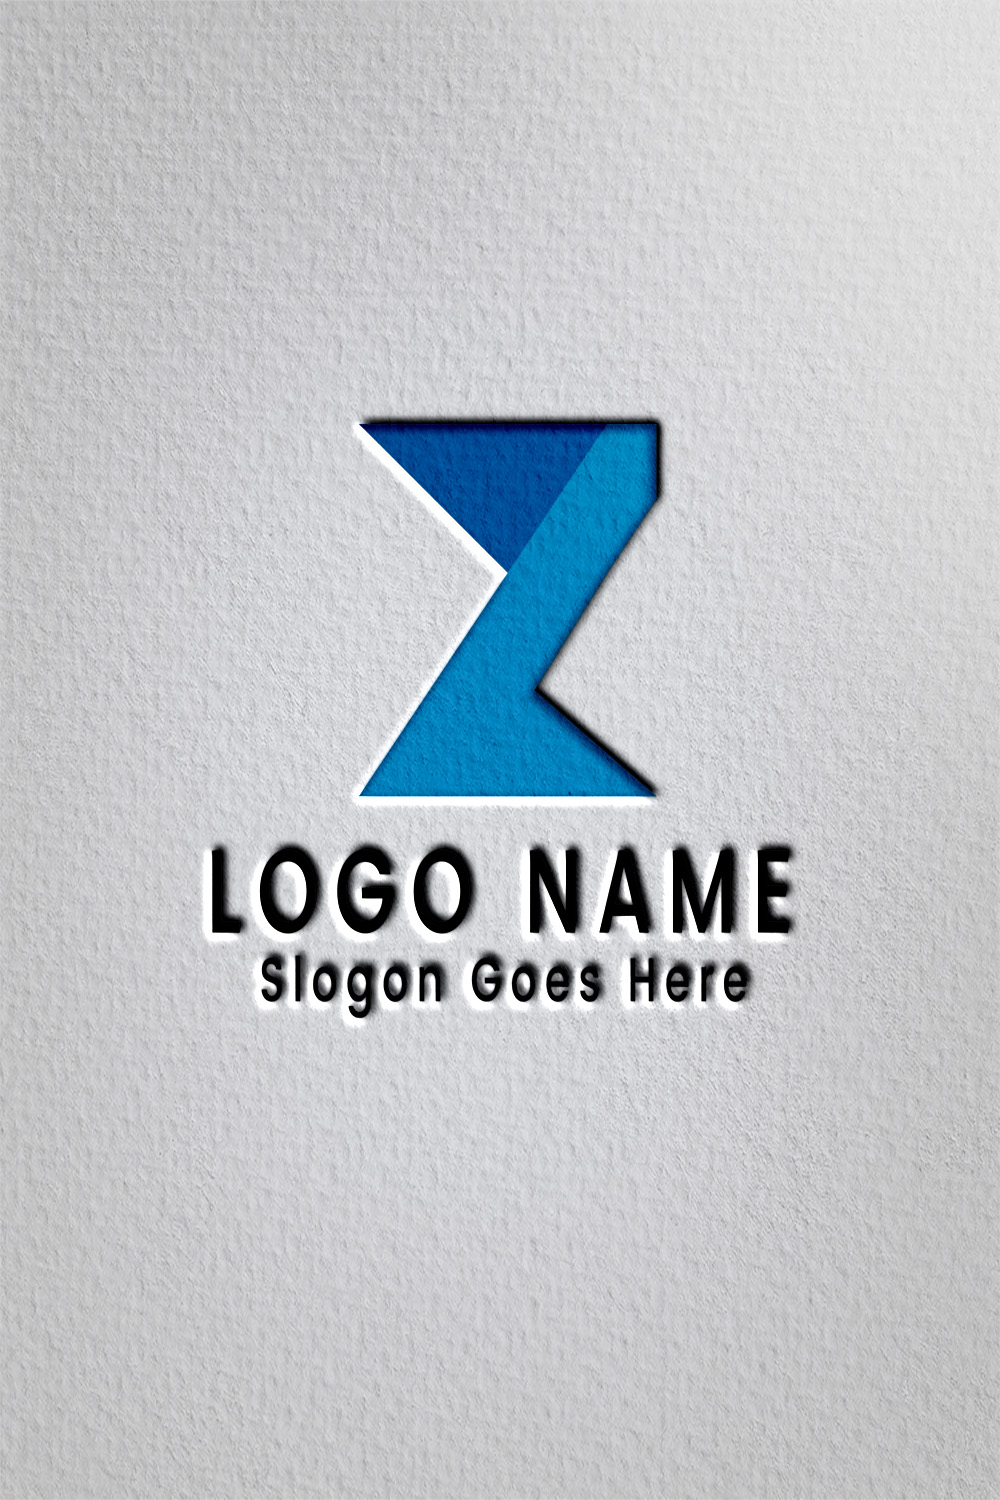 Z letter logo pinterest preview image.